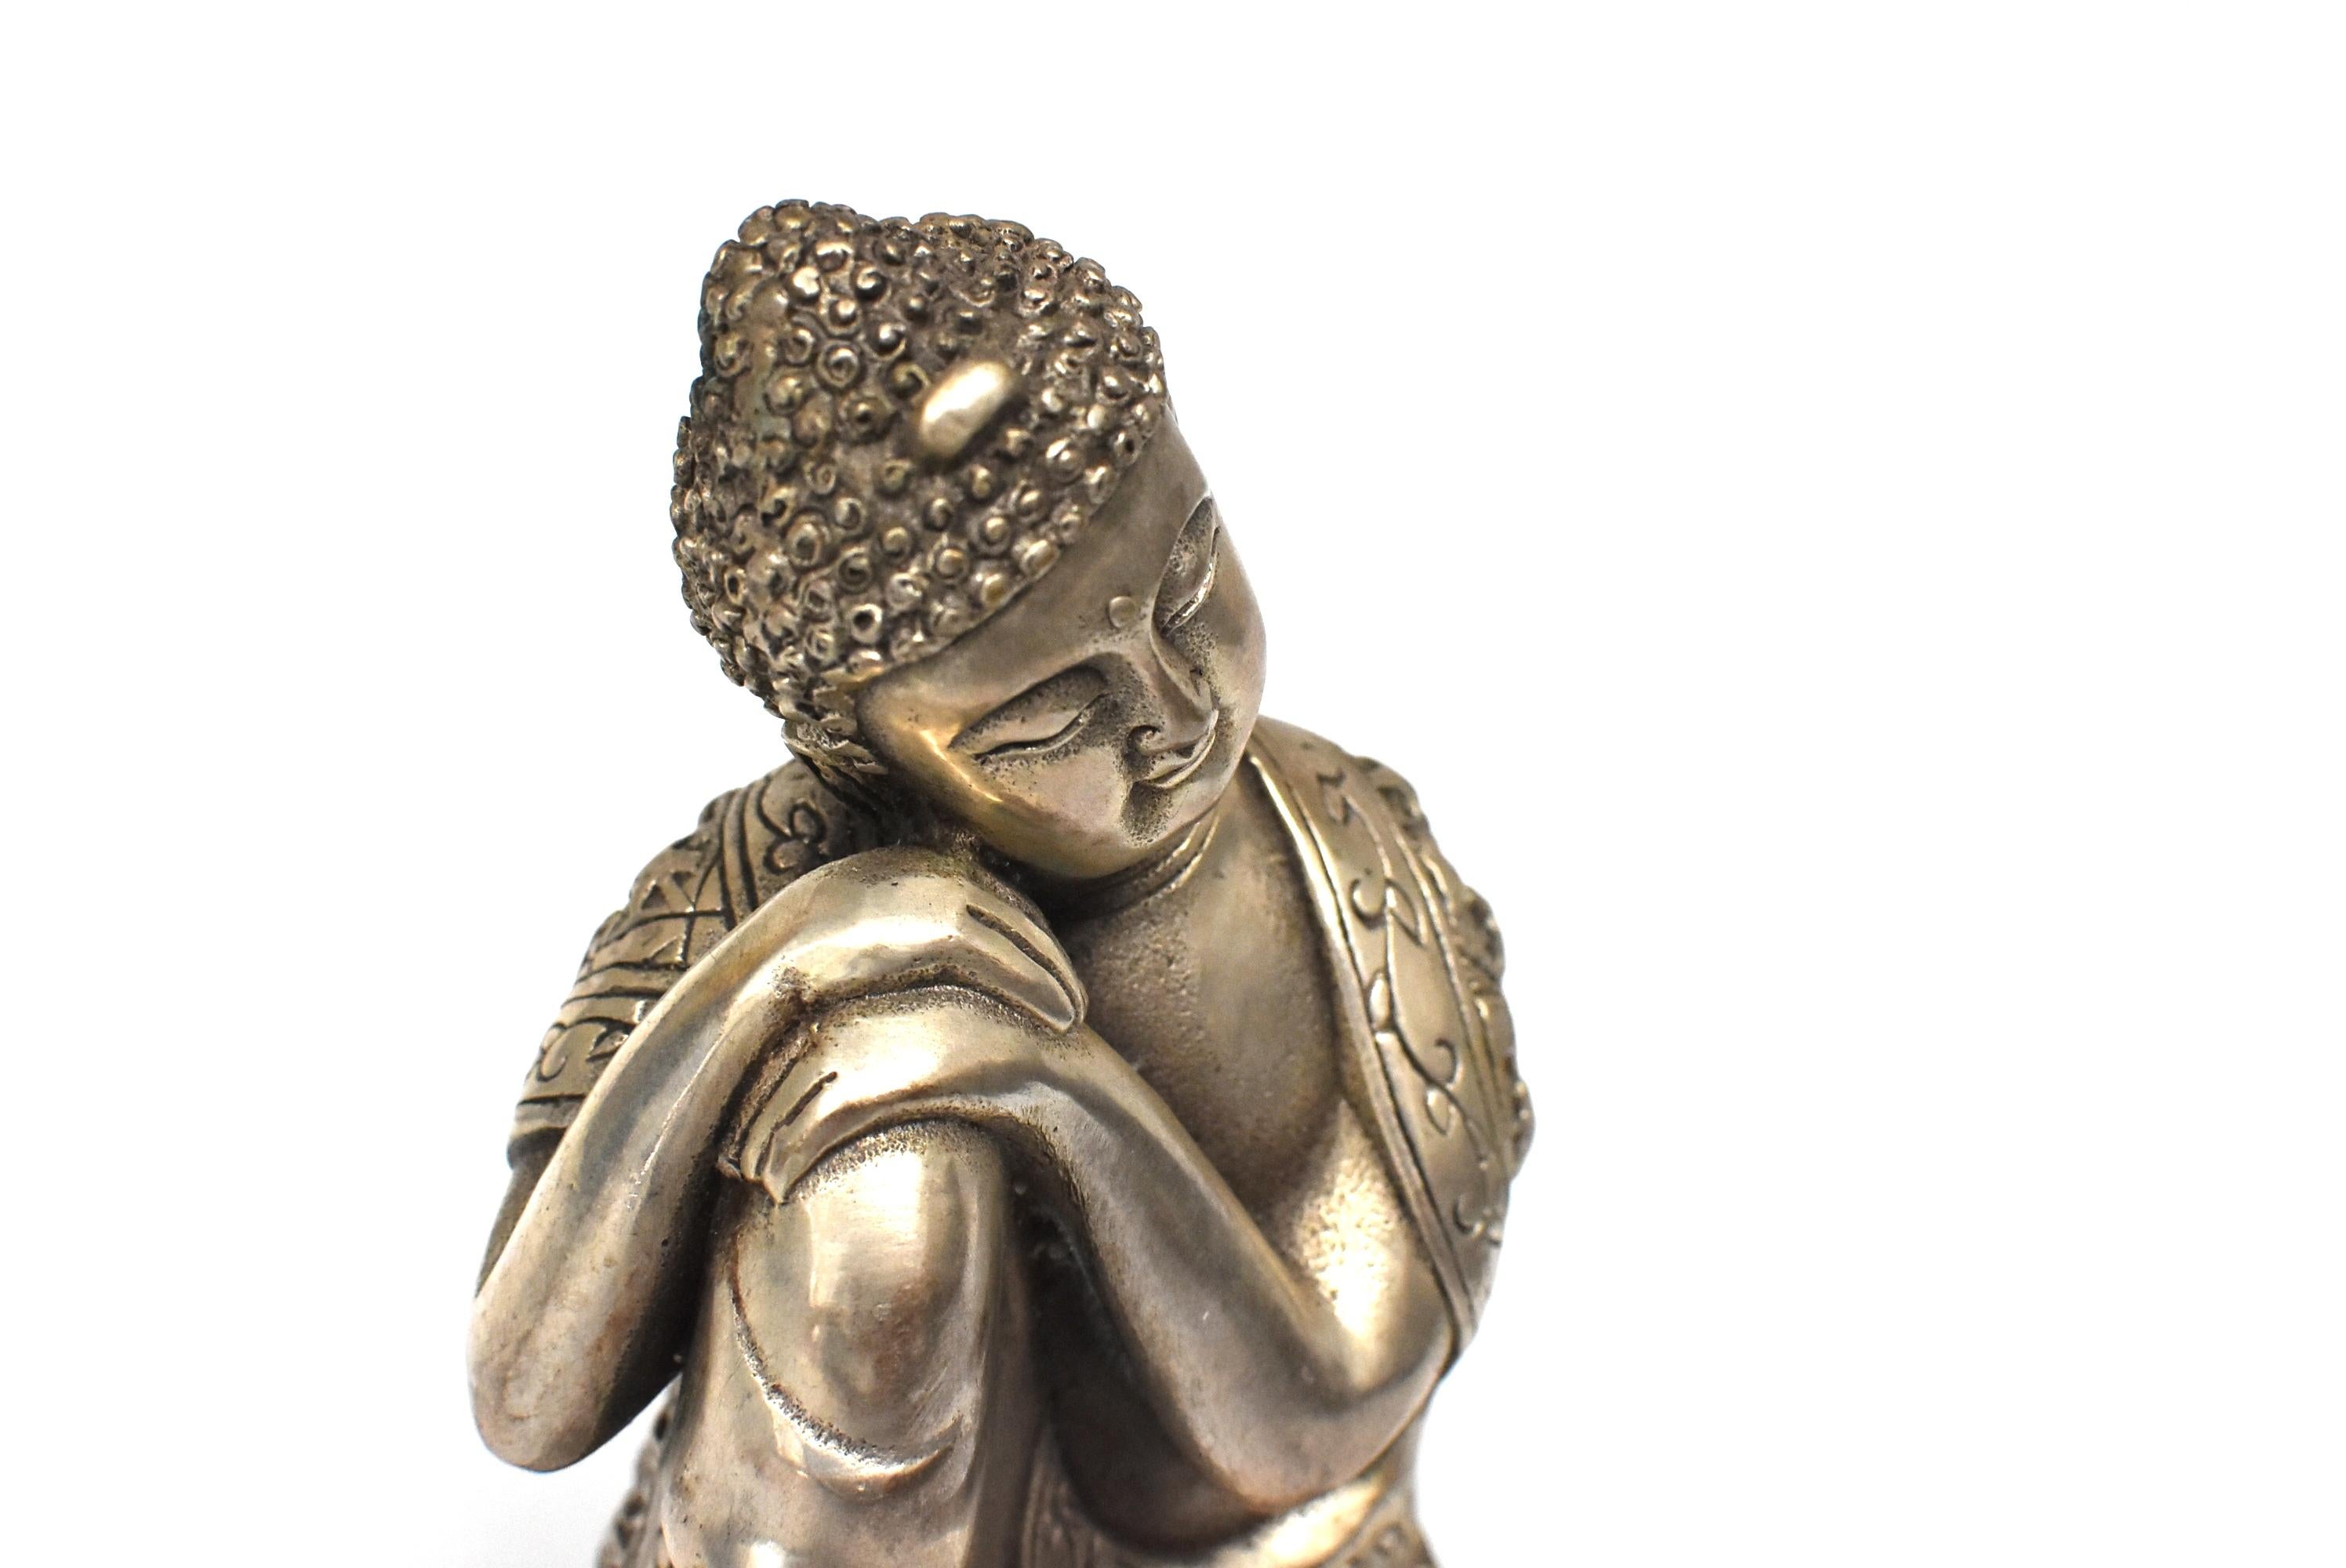 Silvered Brass Buddha Statue, a Thinking Buddha 6